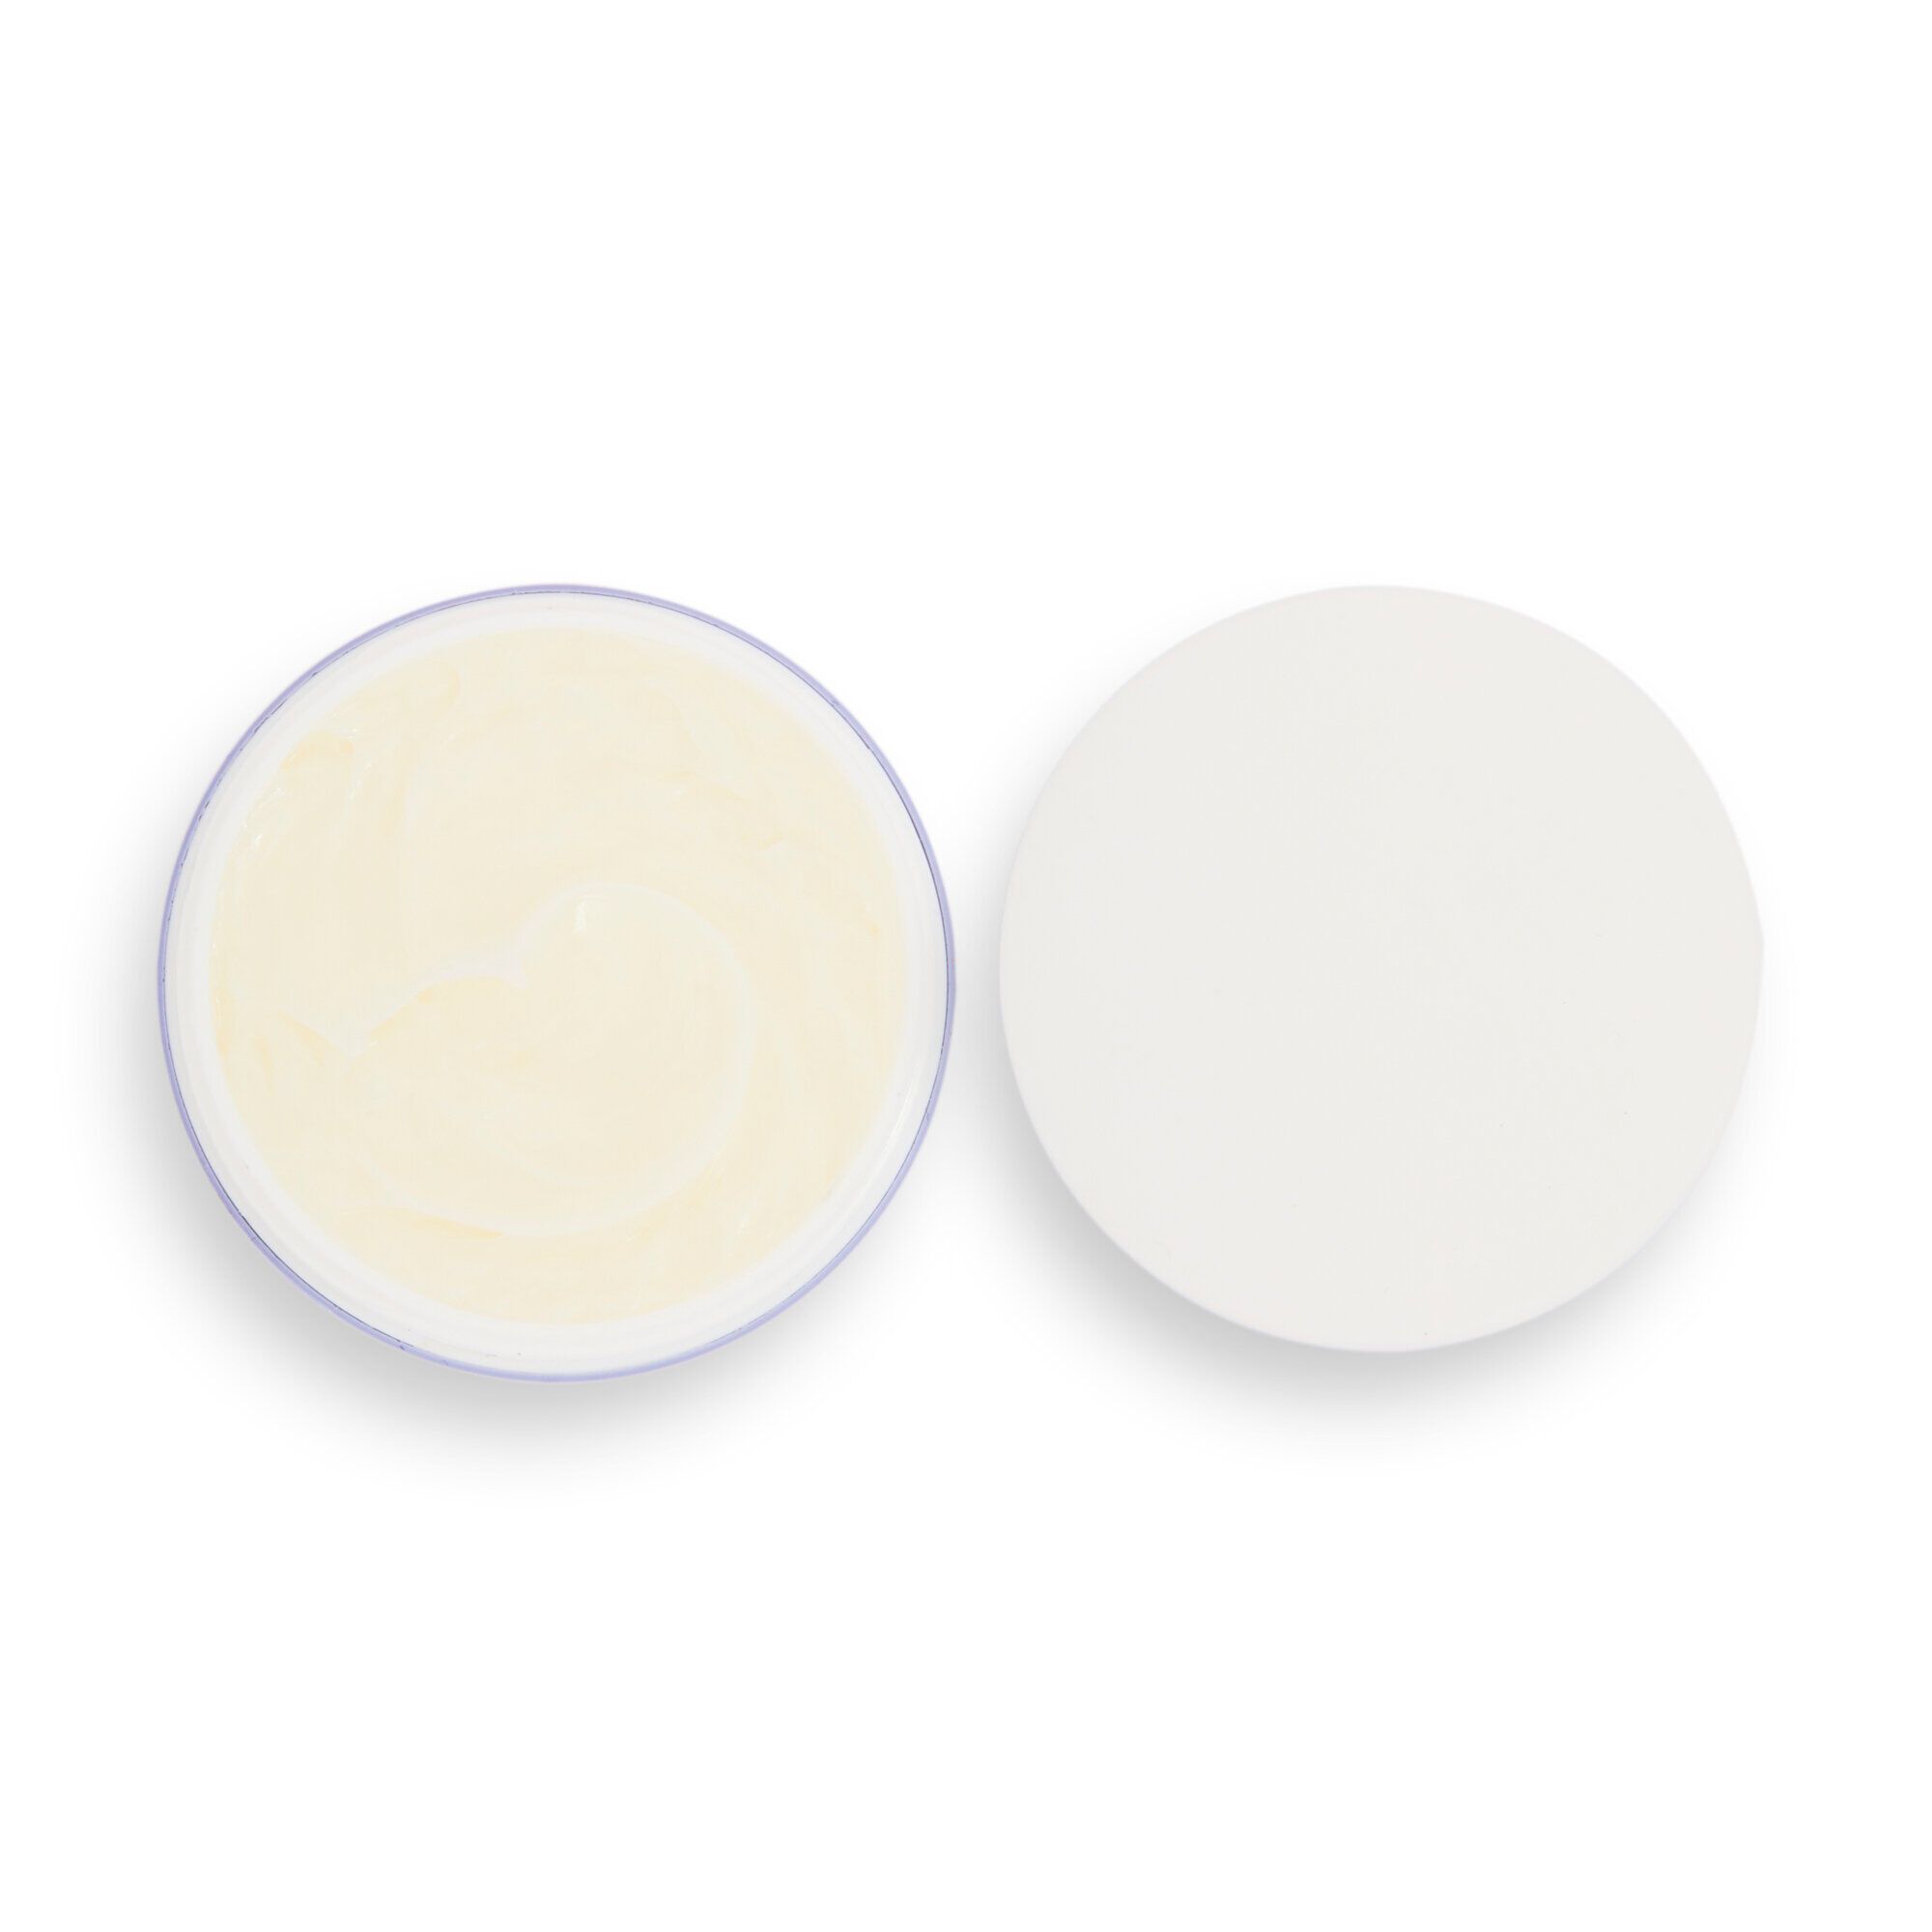 Crème Pour Le Visage - Revolution Skincare x Sali Hughes - Cream Drench Rich Anytime Moisturiser